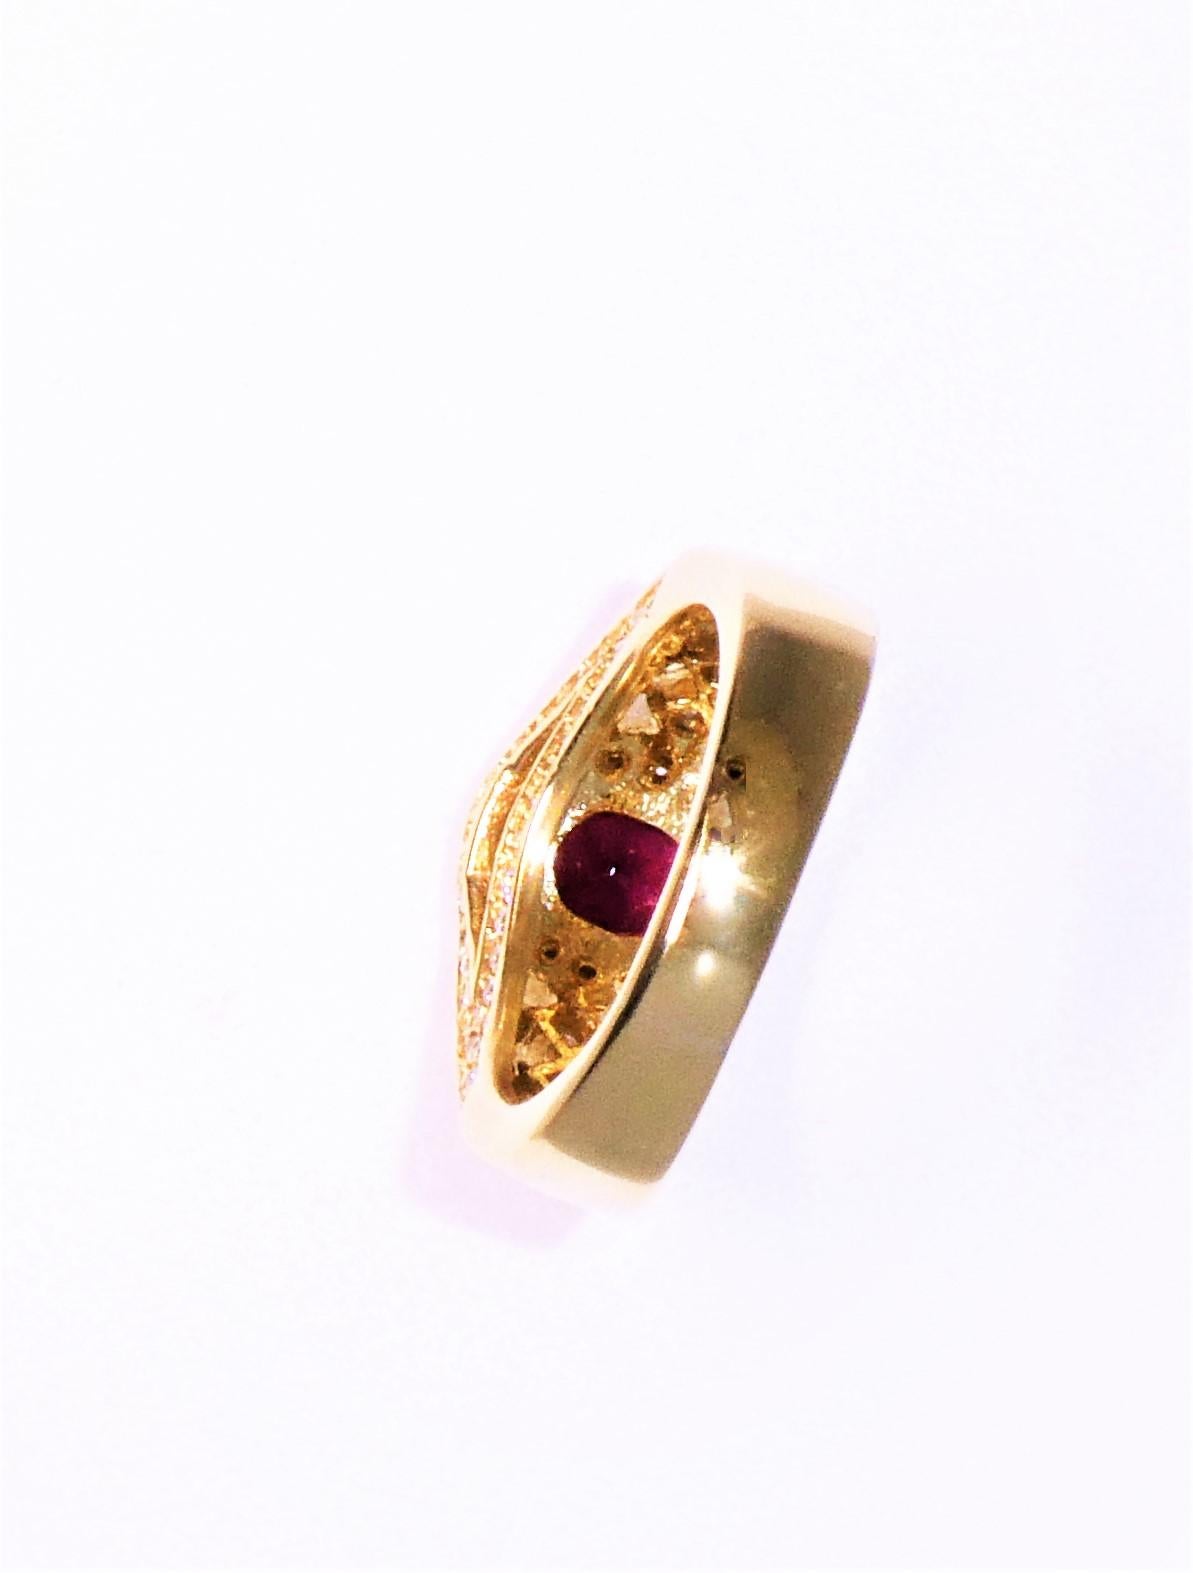 Oval Cut 18 Karat Yellow Gold, Burmese Ruby '0.85 Carat' and Diamond '1.62 Carat' Ring